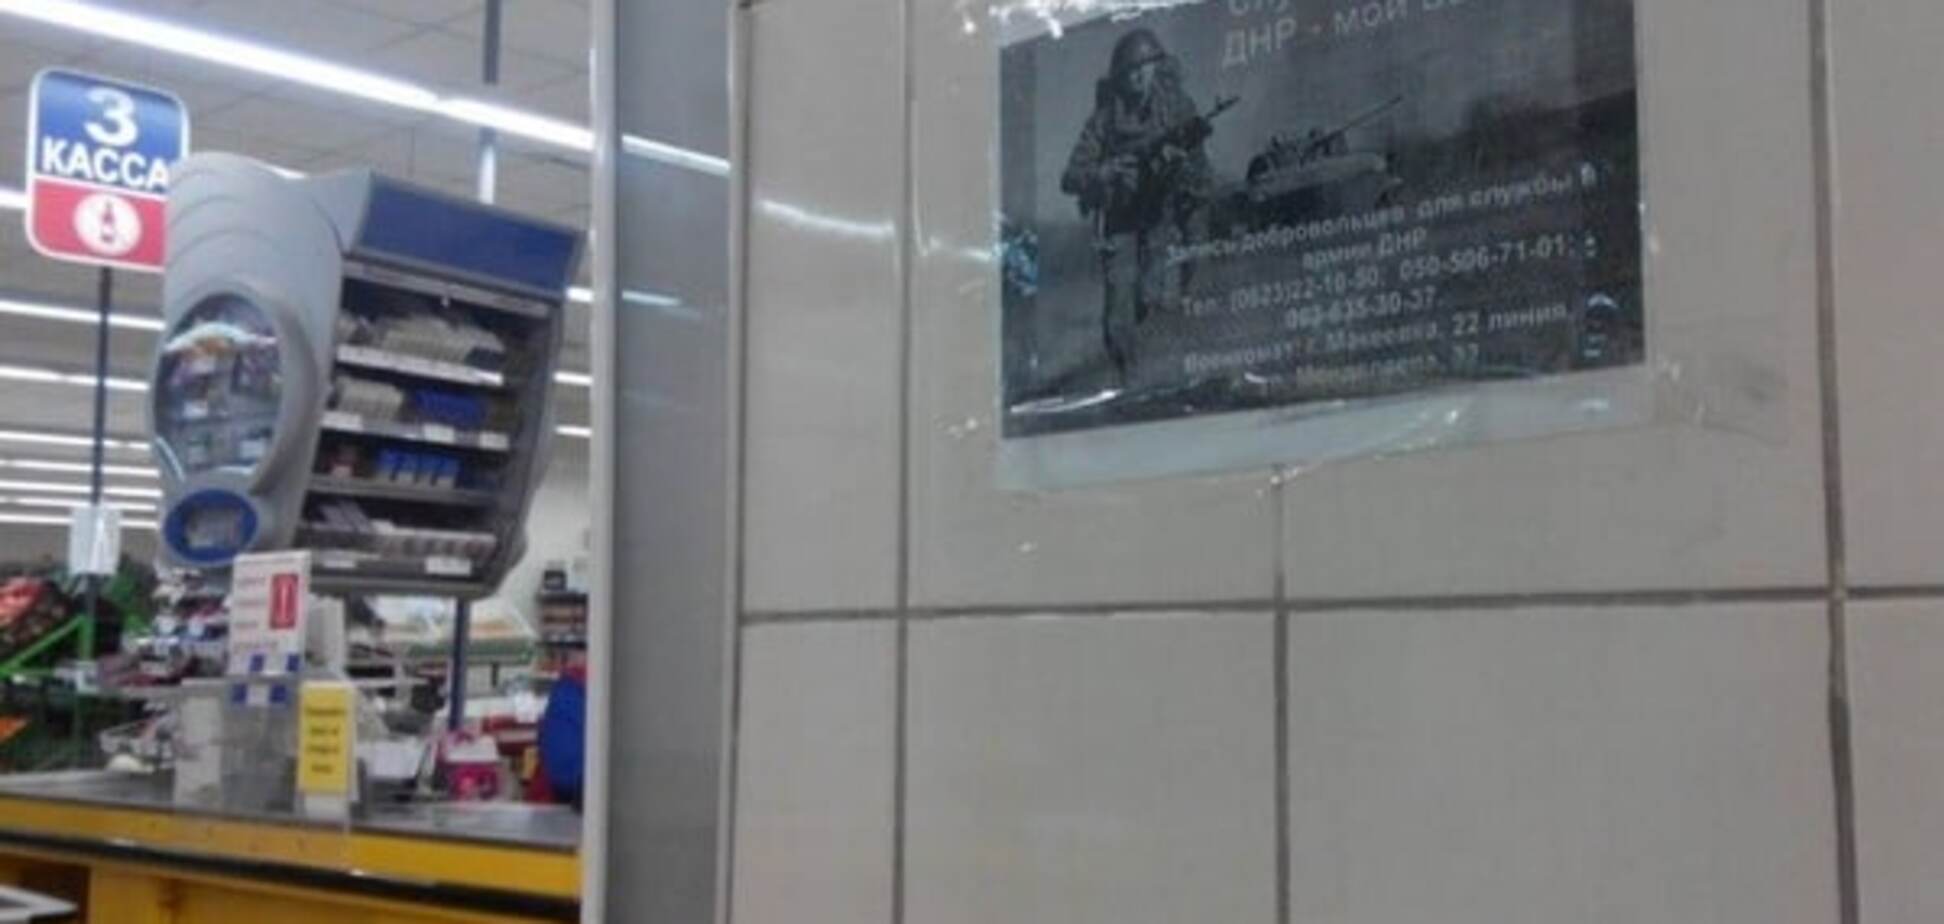 'Купити терориста': в армію 'ДНР' зазивають в супермаркетах. Фотофакт